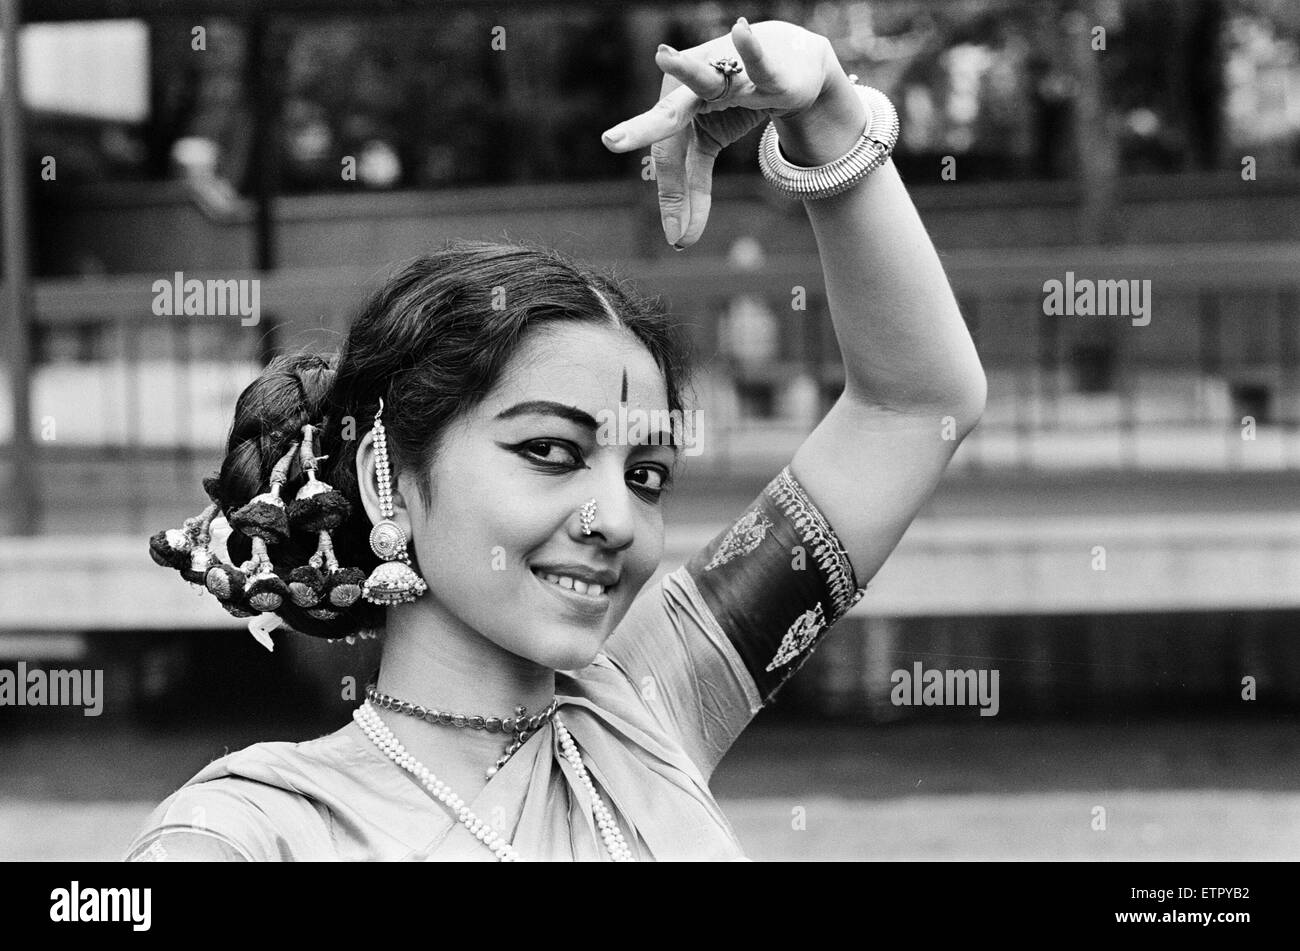 Les danseurs classique indienne, Londres, 28 août 1965. Banque D'Images